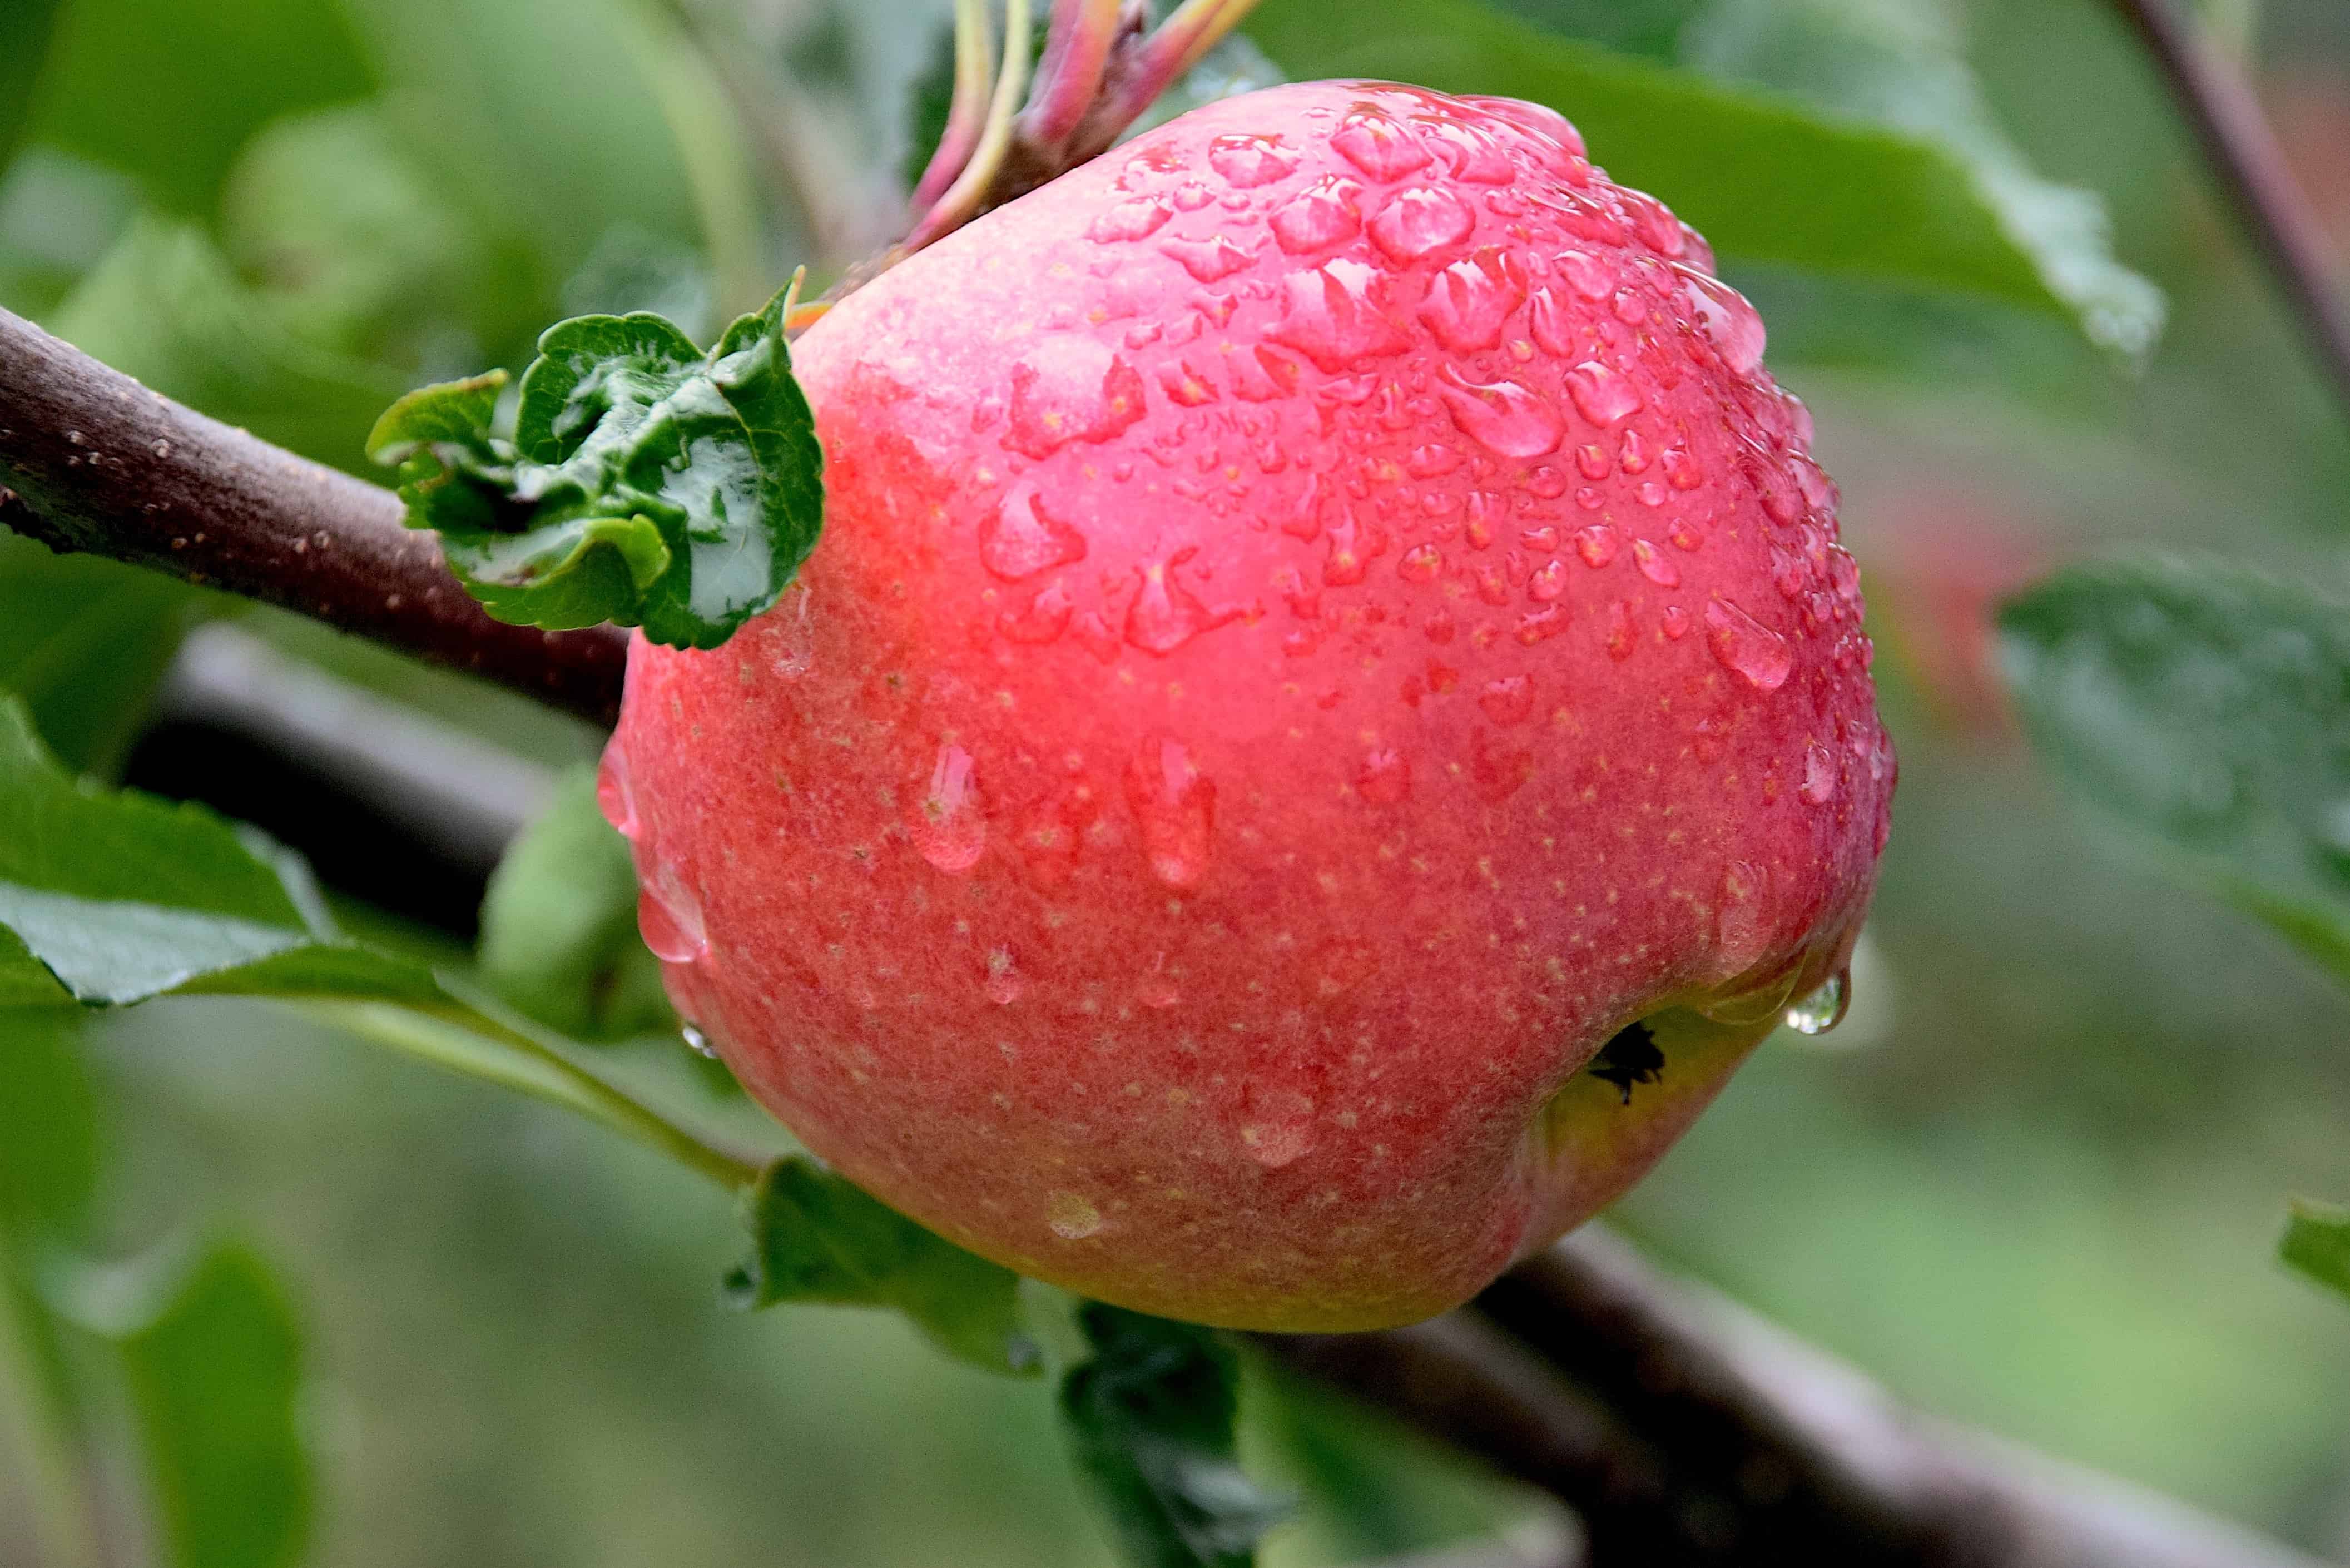 フリー写真画像 雨 食べ物 自然 フルーツ 庭 果樹園 緑の葉 赤いりんご おいしい